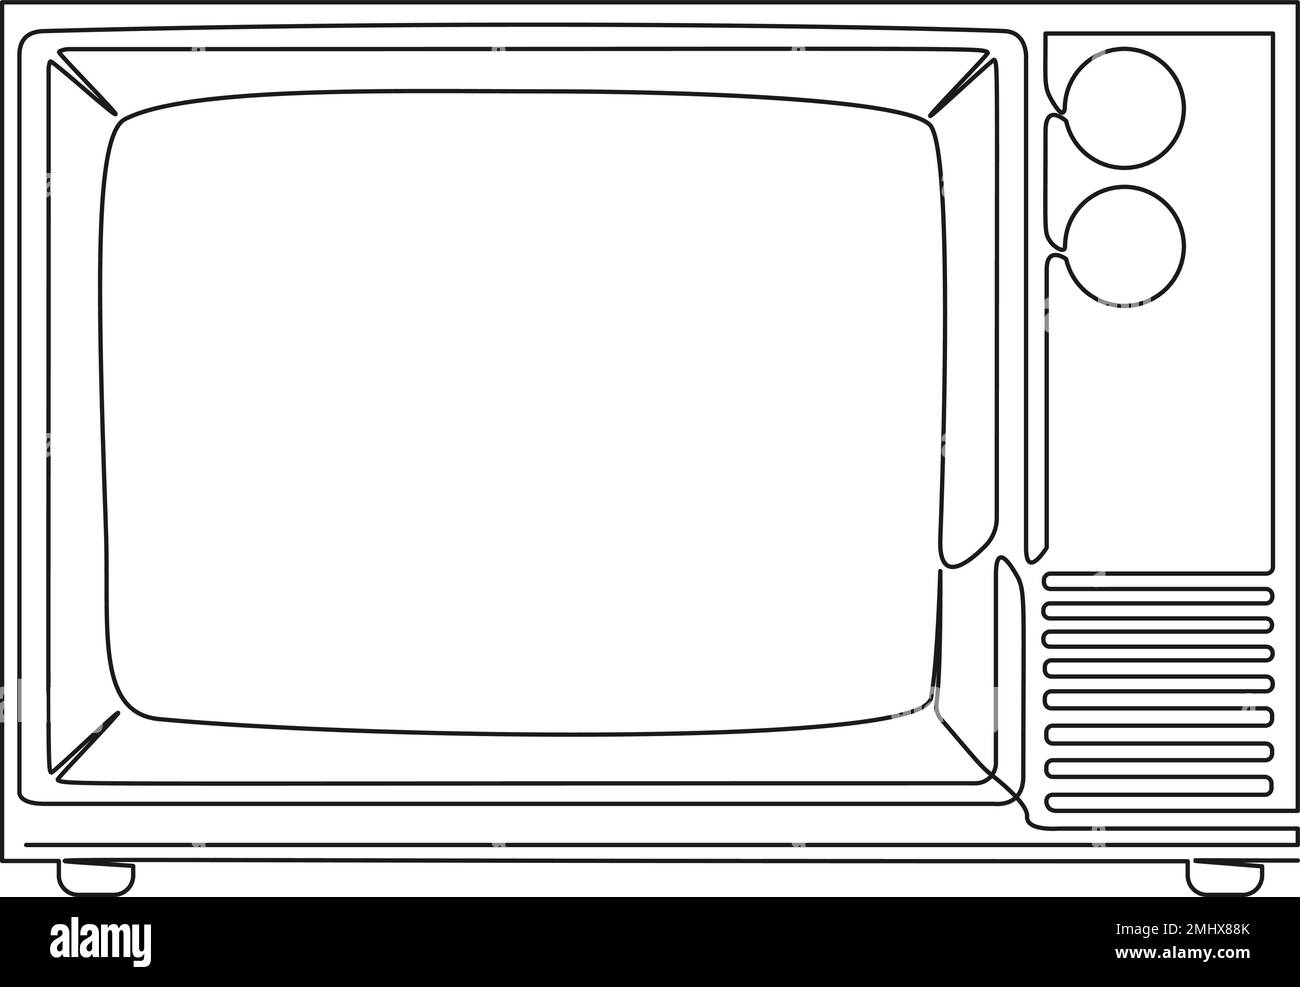 disegno a linea singola continuo del vecchio set tv a tubo, illustrazione vettoriale line art Illustrazione Vettoriale